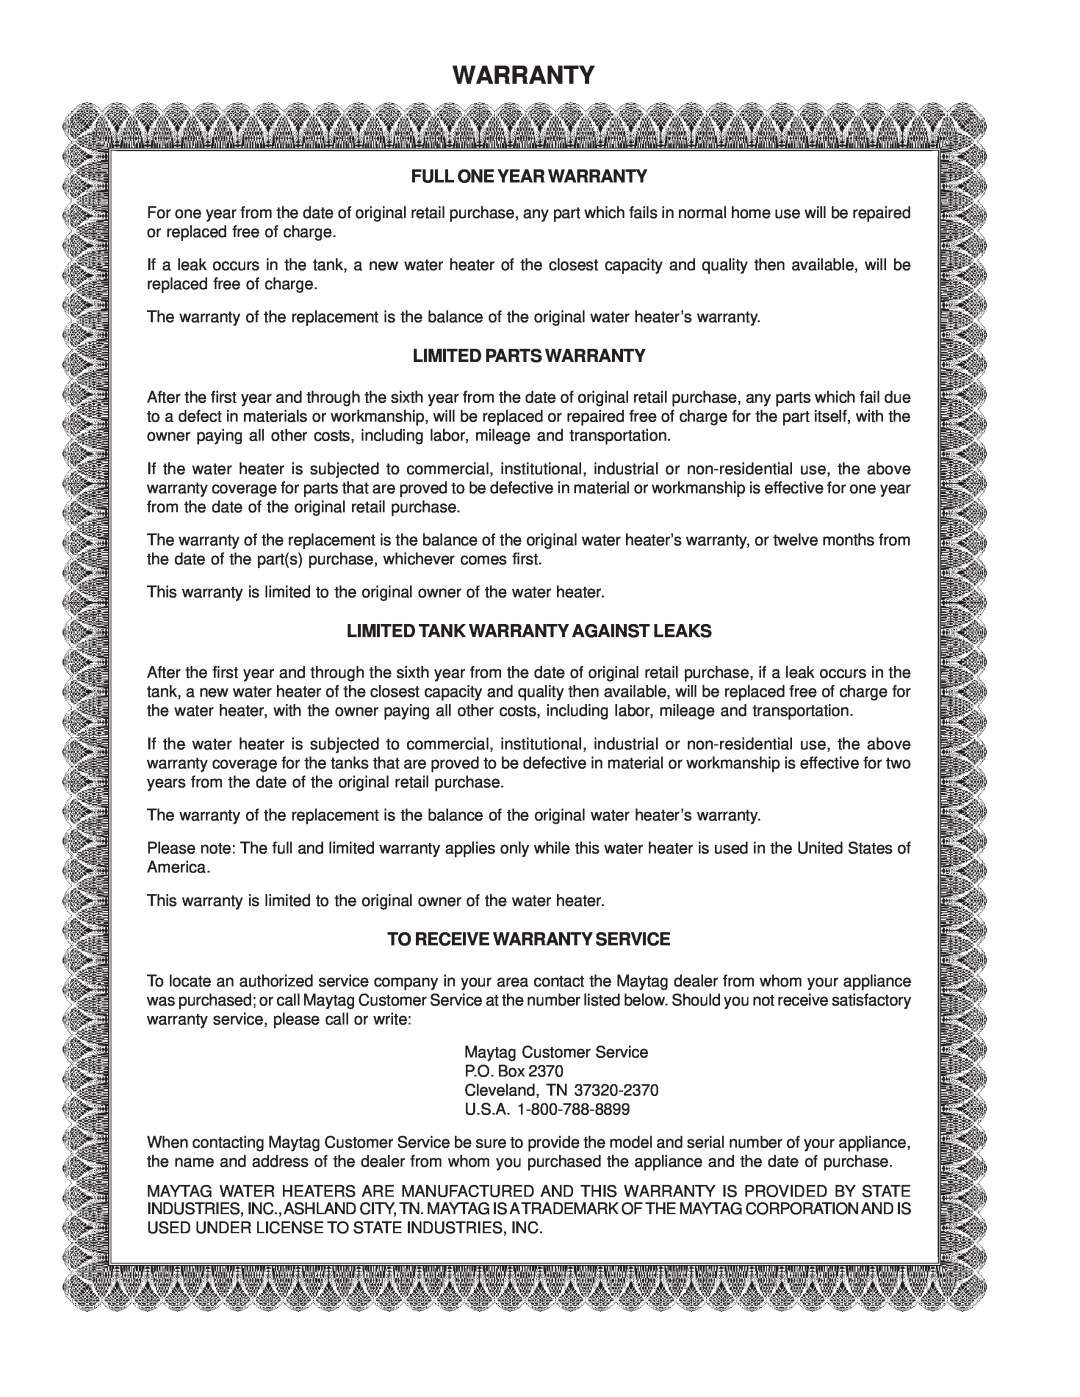 Maytag C3 manual Full One Year Warranty, Limited Parts Warranty, Limited Tank Warranty Against Leaks 